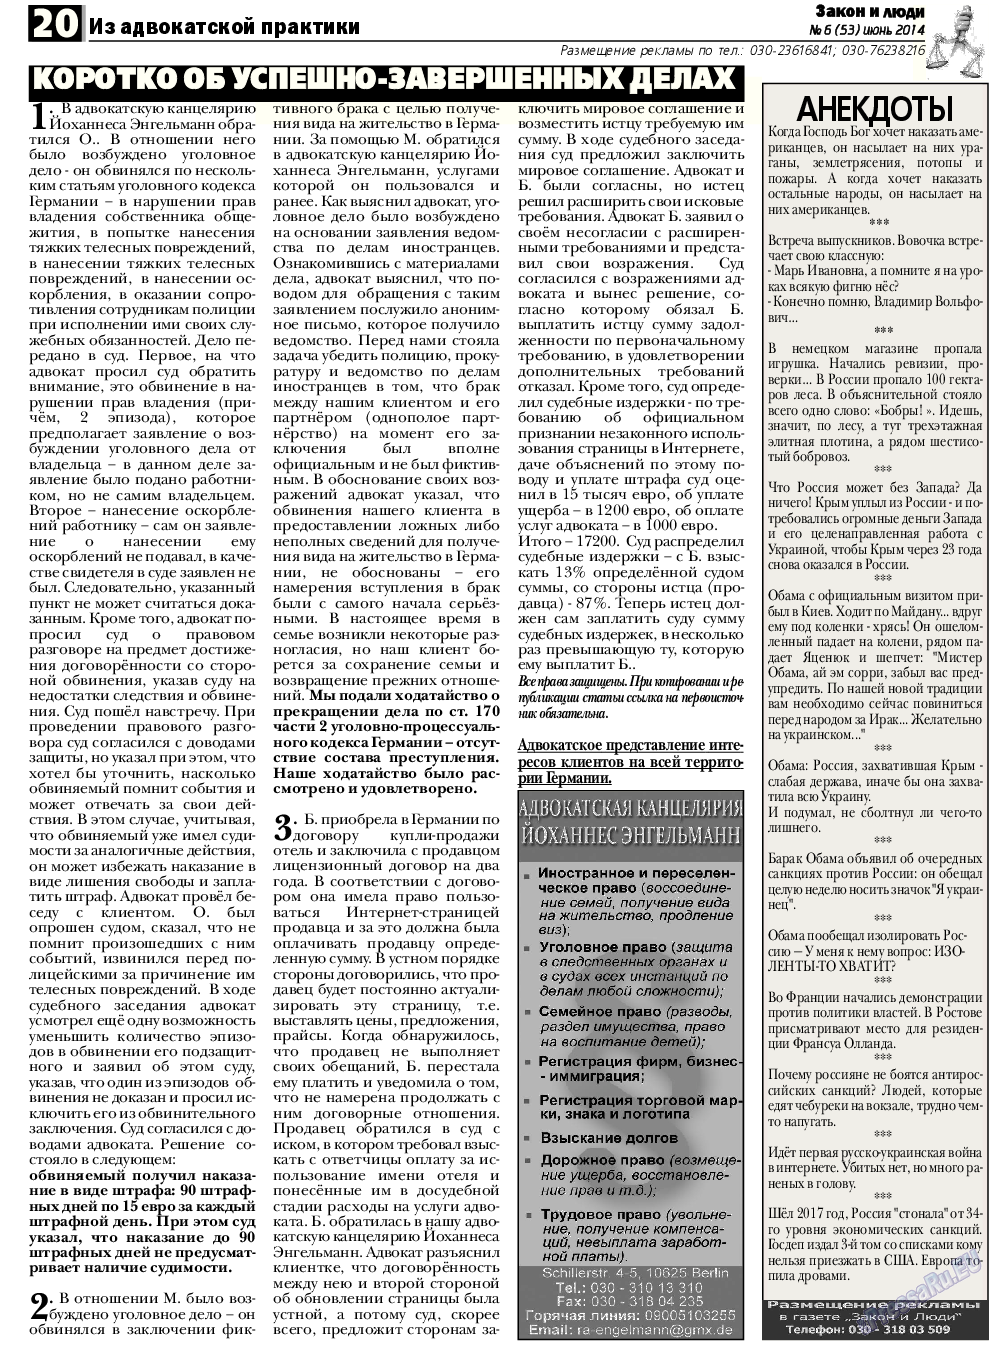 Закон и люди, газета. 2014 №6 стр.20